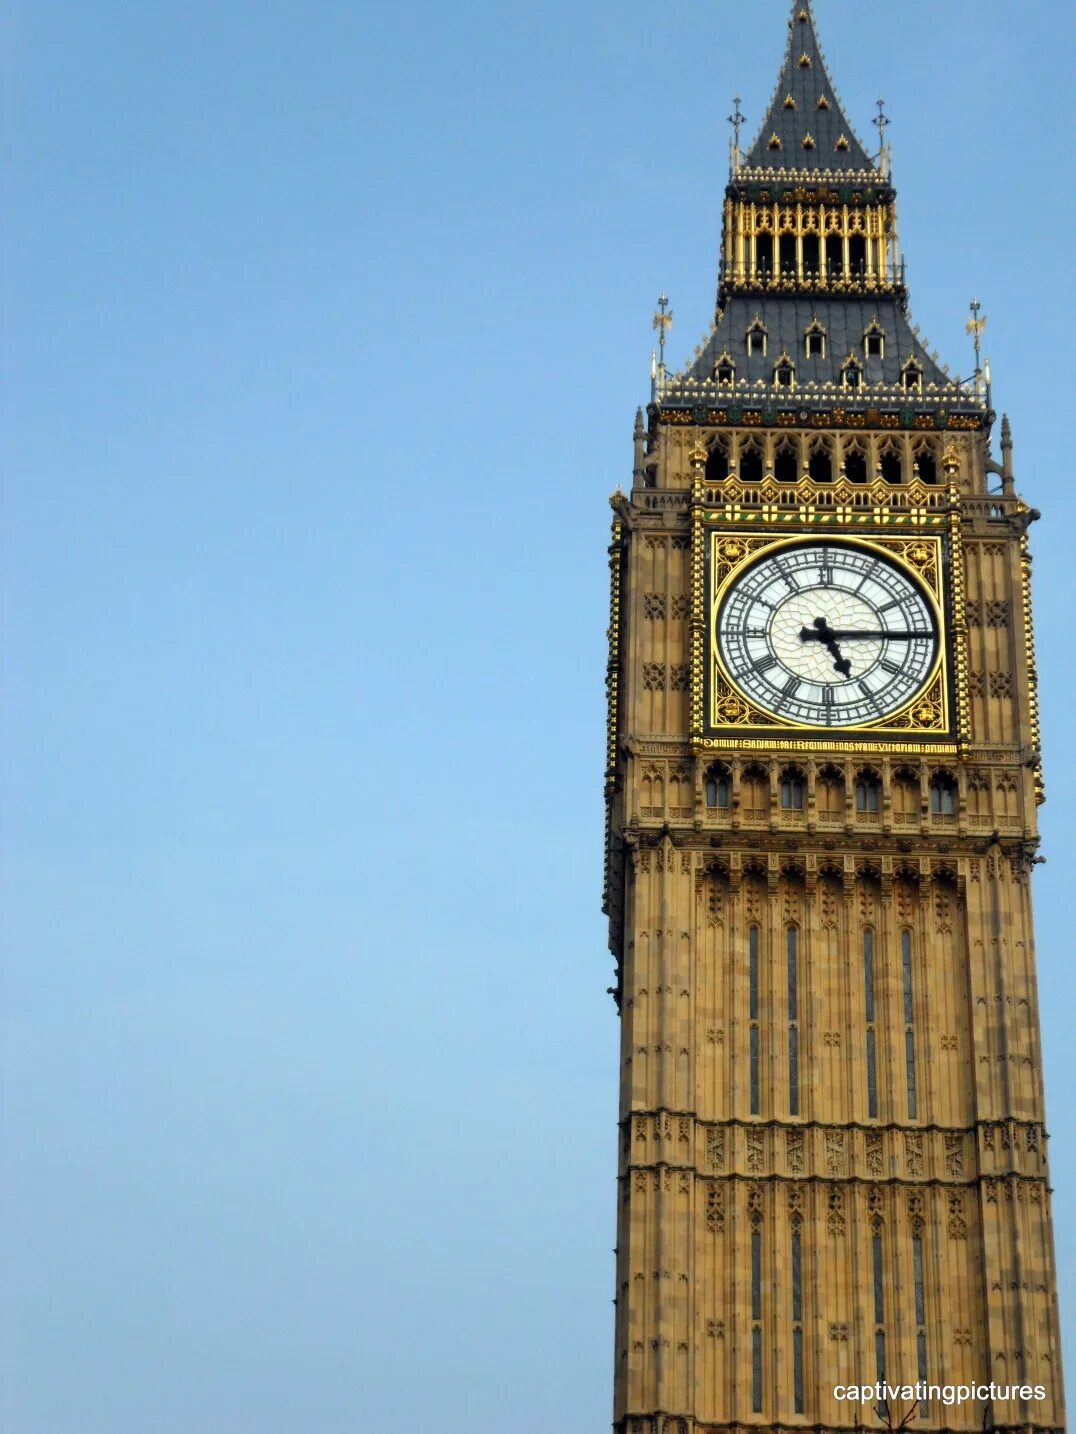 Биг бен история. Биг-Бен (башня Елизаветы). Башня big Ben. Достопримечательности Лондона Биг Бен. Часы Биг Бен в Лондоне.